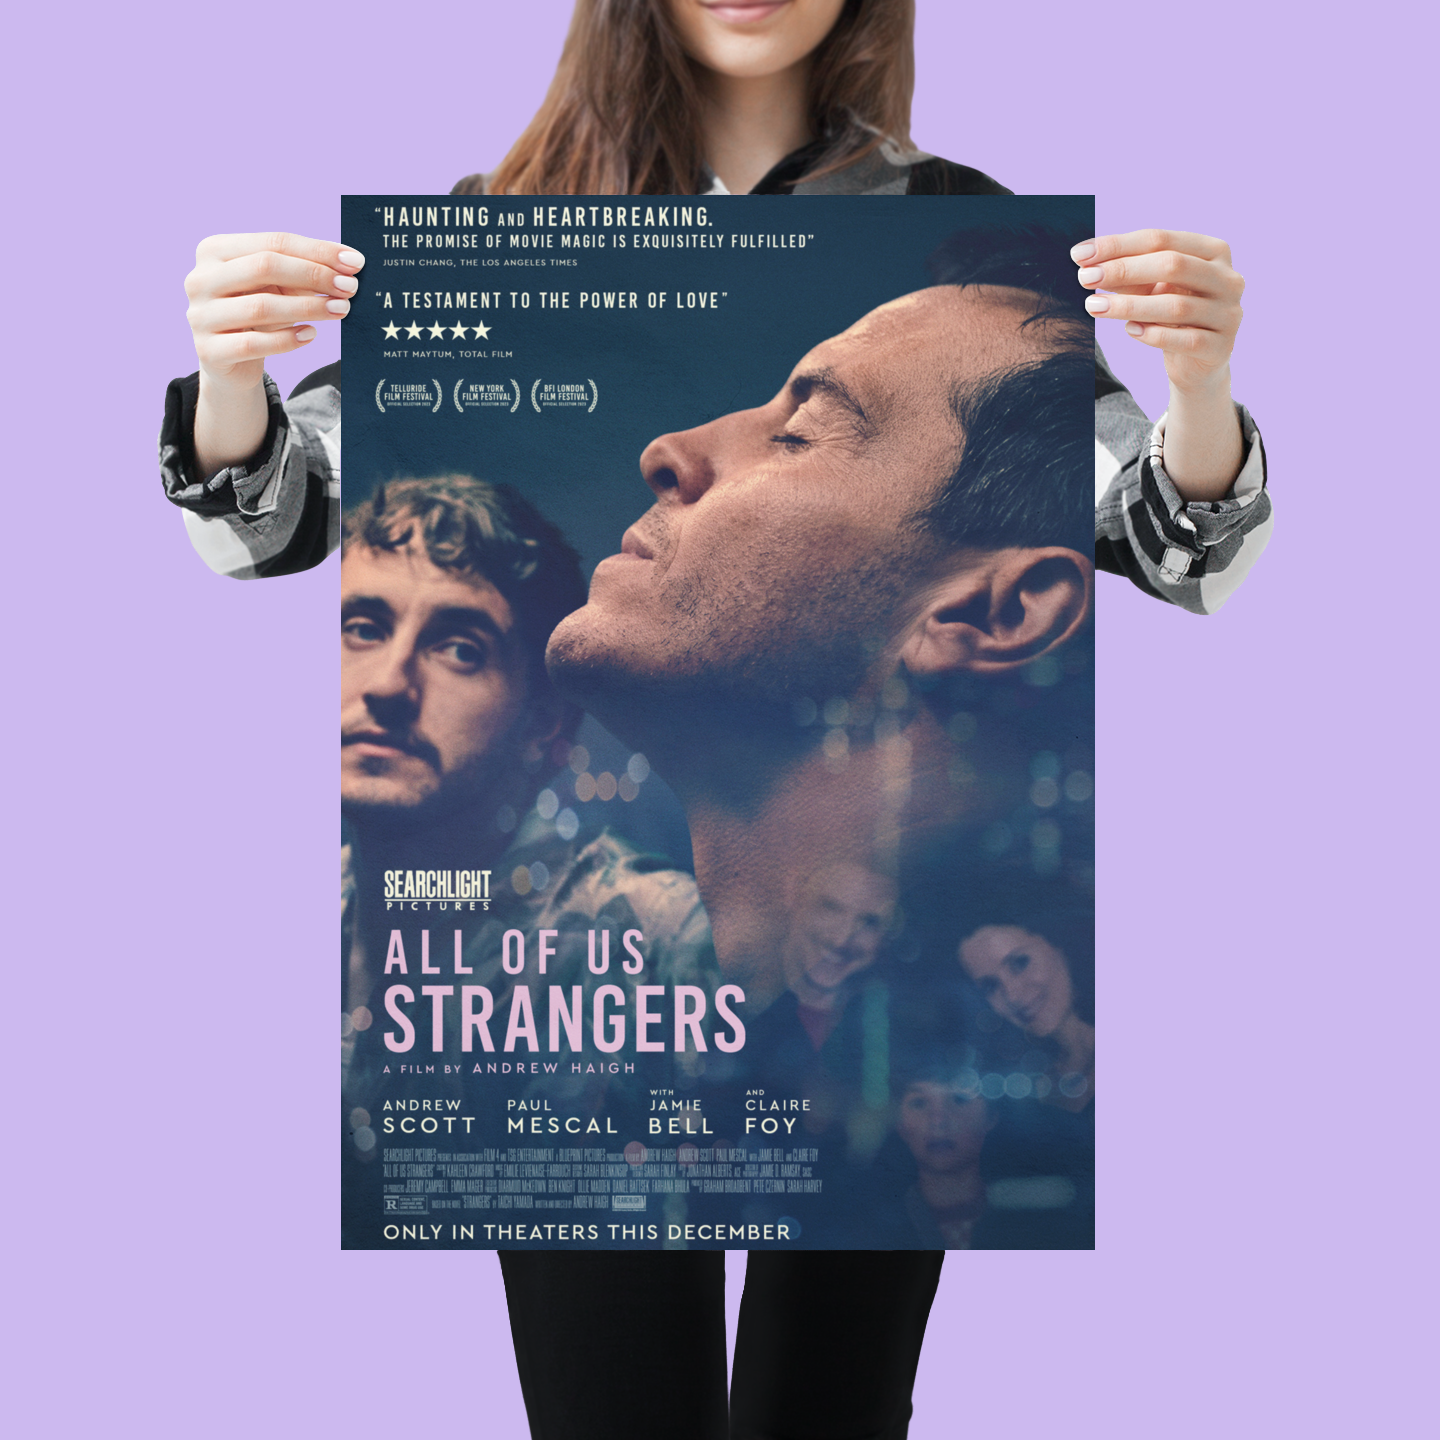 All of Us Strangers' Trailer: Paul Mescal, Andrew Scott Fall in Love